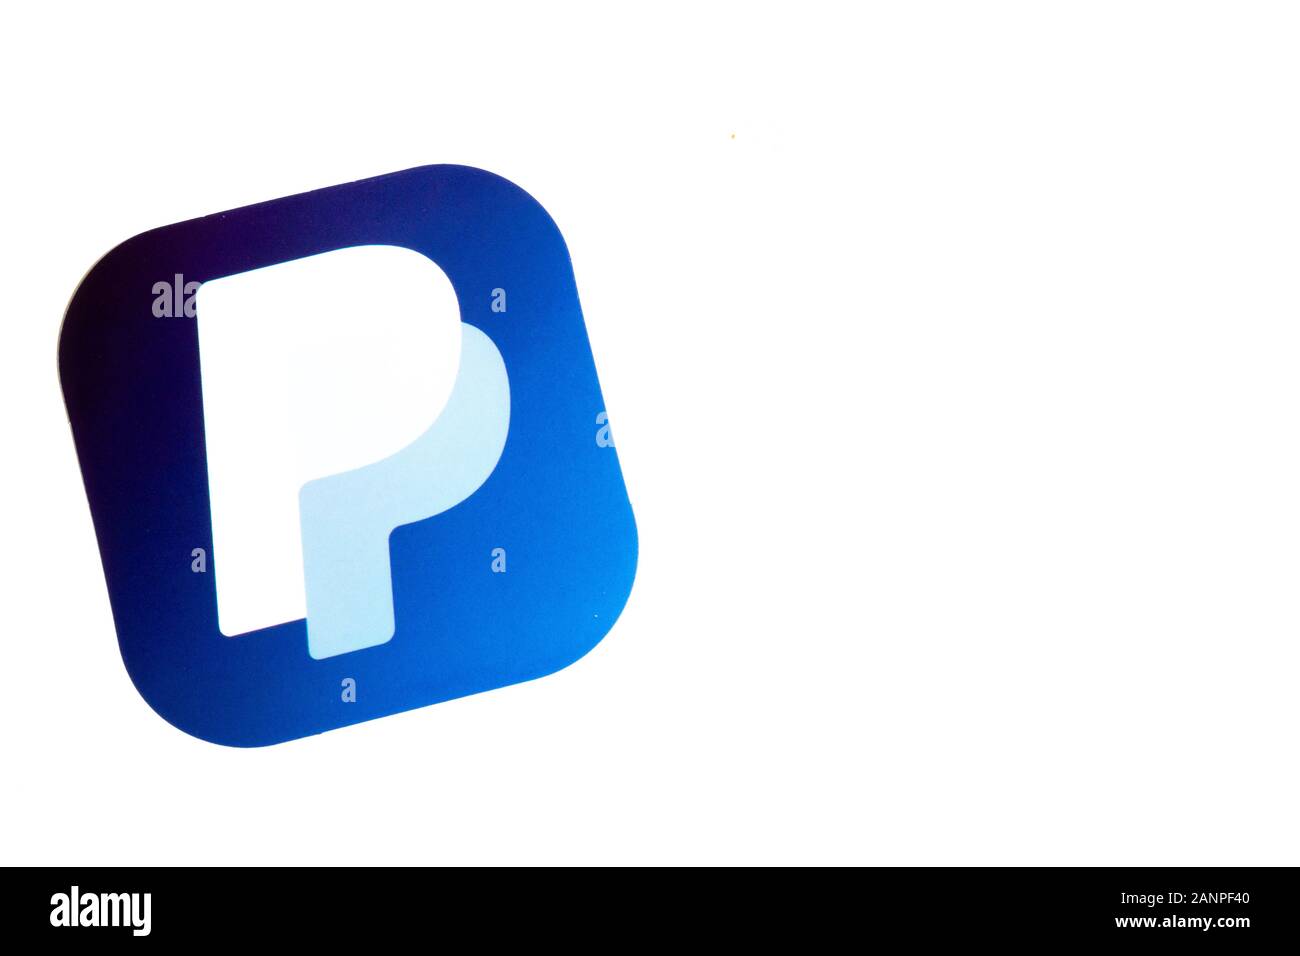 Los Angeles, Californie, États-Unis - 17 janvier 2020: Logo PayPal sur fond blanc avec espace de copie, éditorial illustratif Banque D'Images